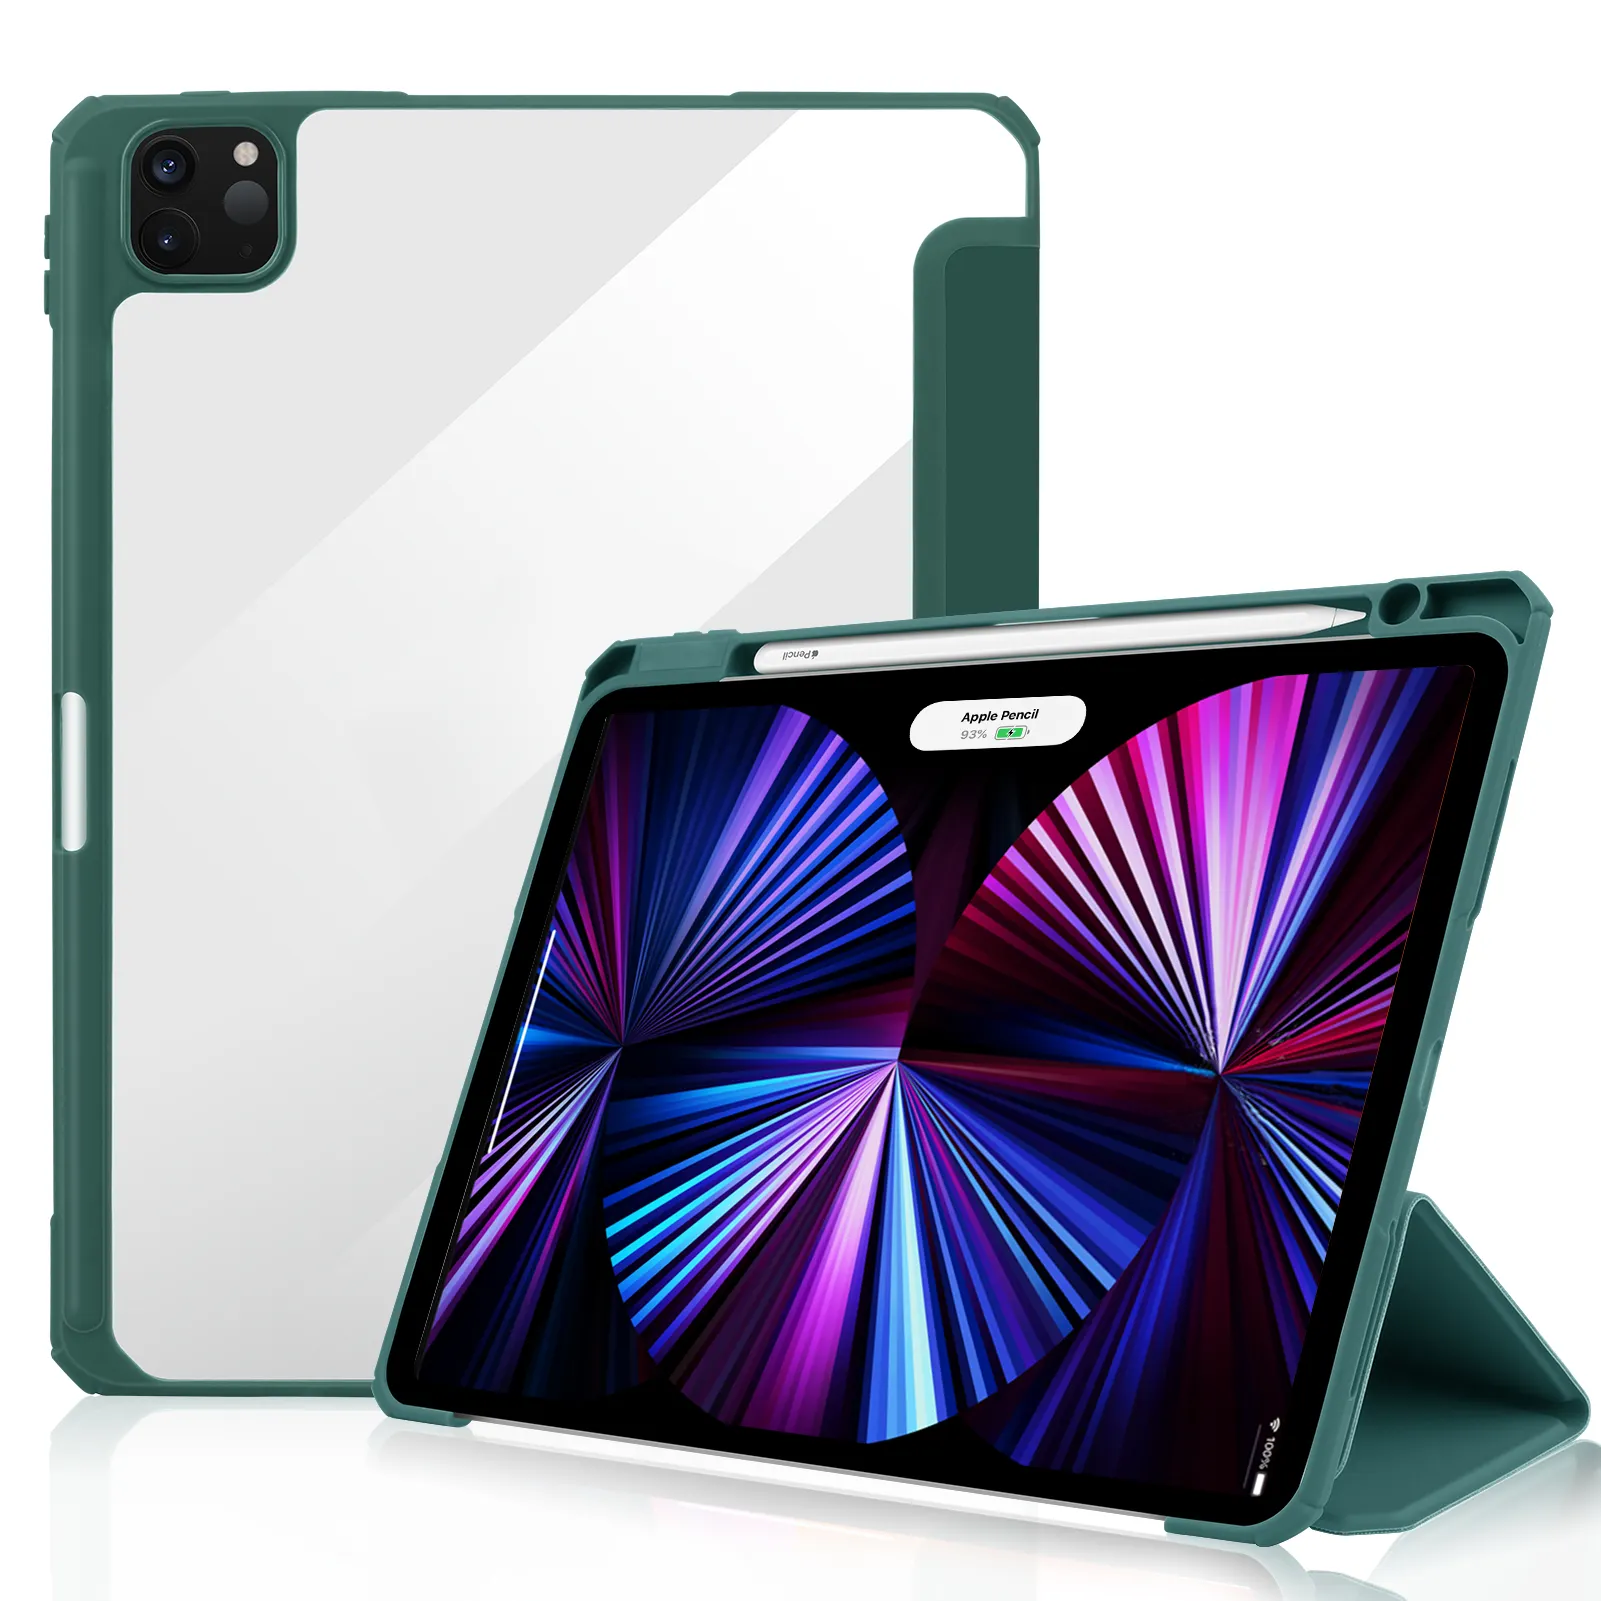 2020 nuovo iPad con slot per penna soft cover guscio antiurto trasparente per iPad Pro 11 pollici